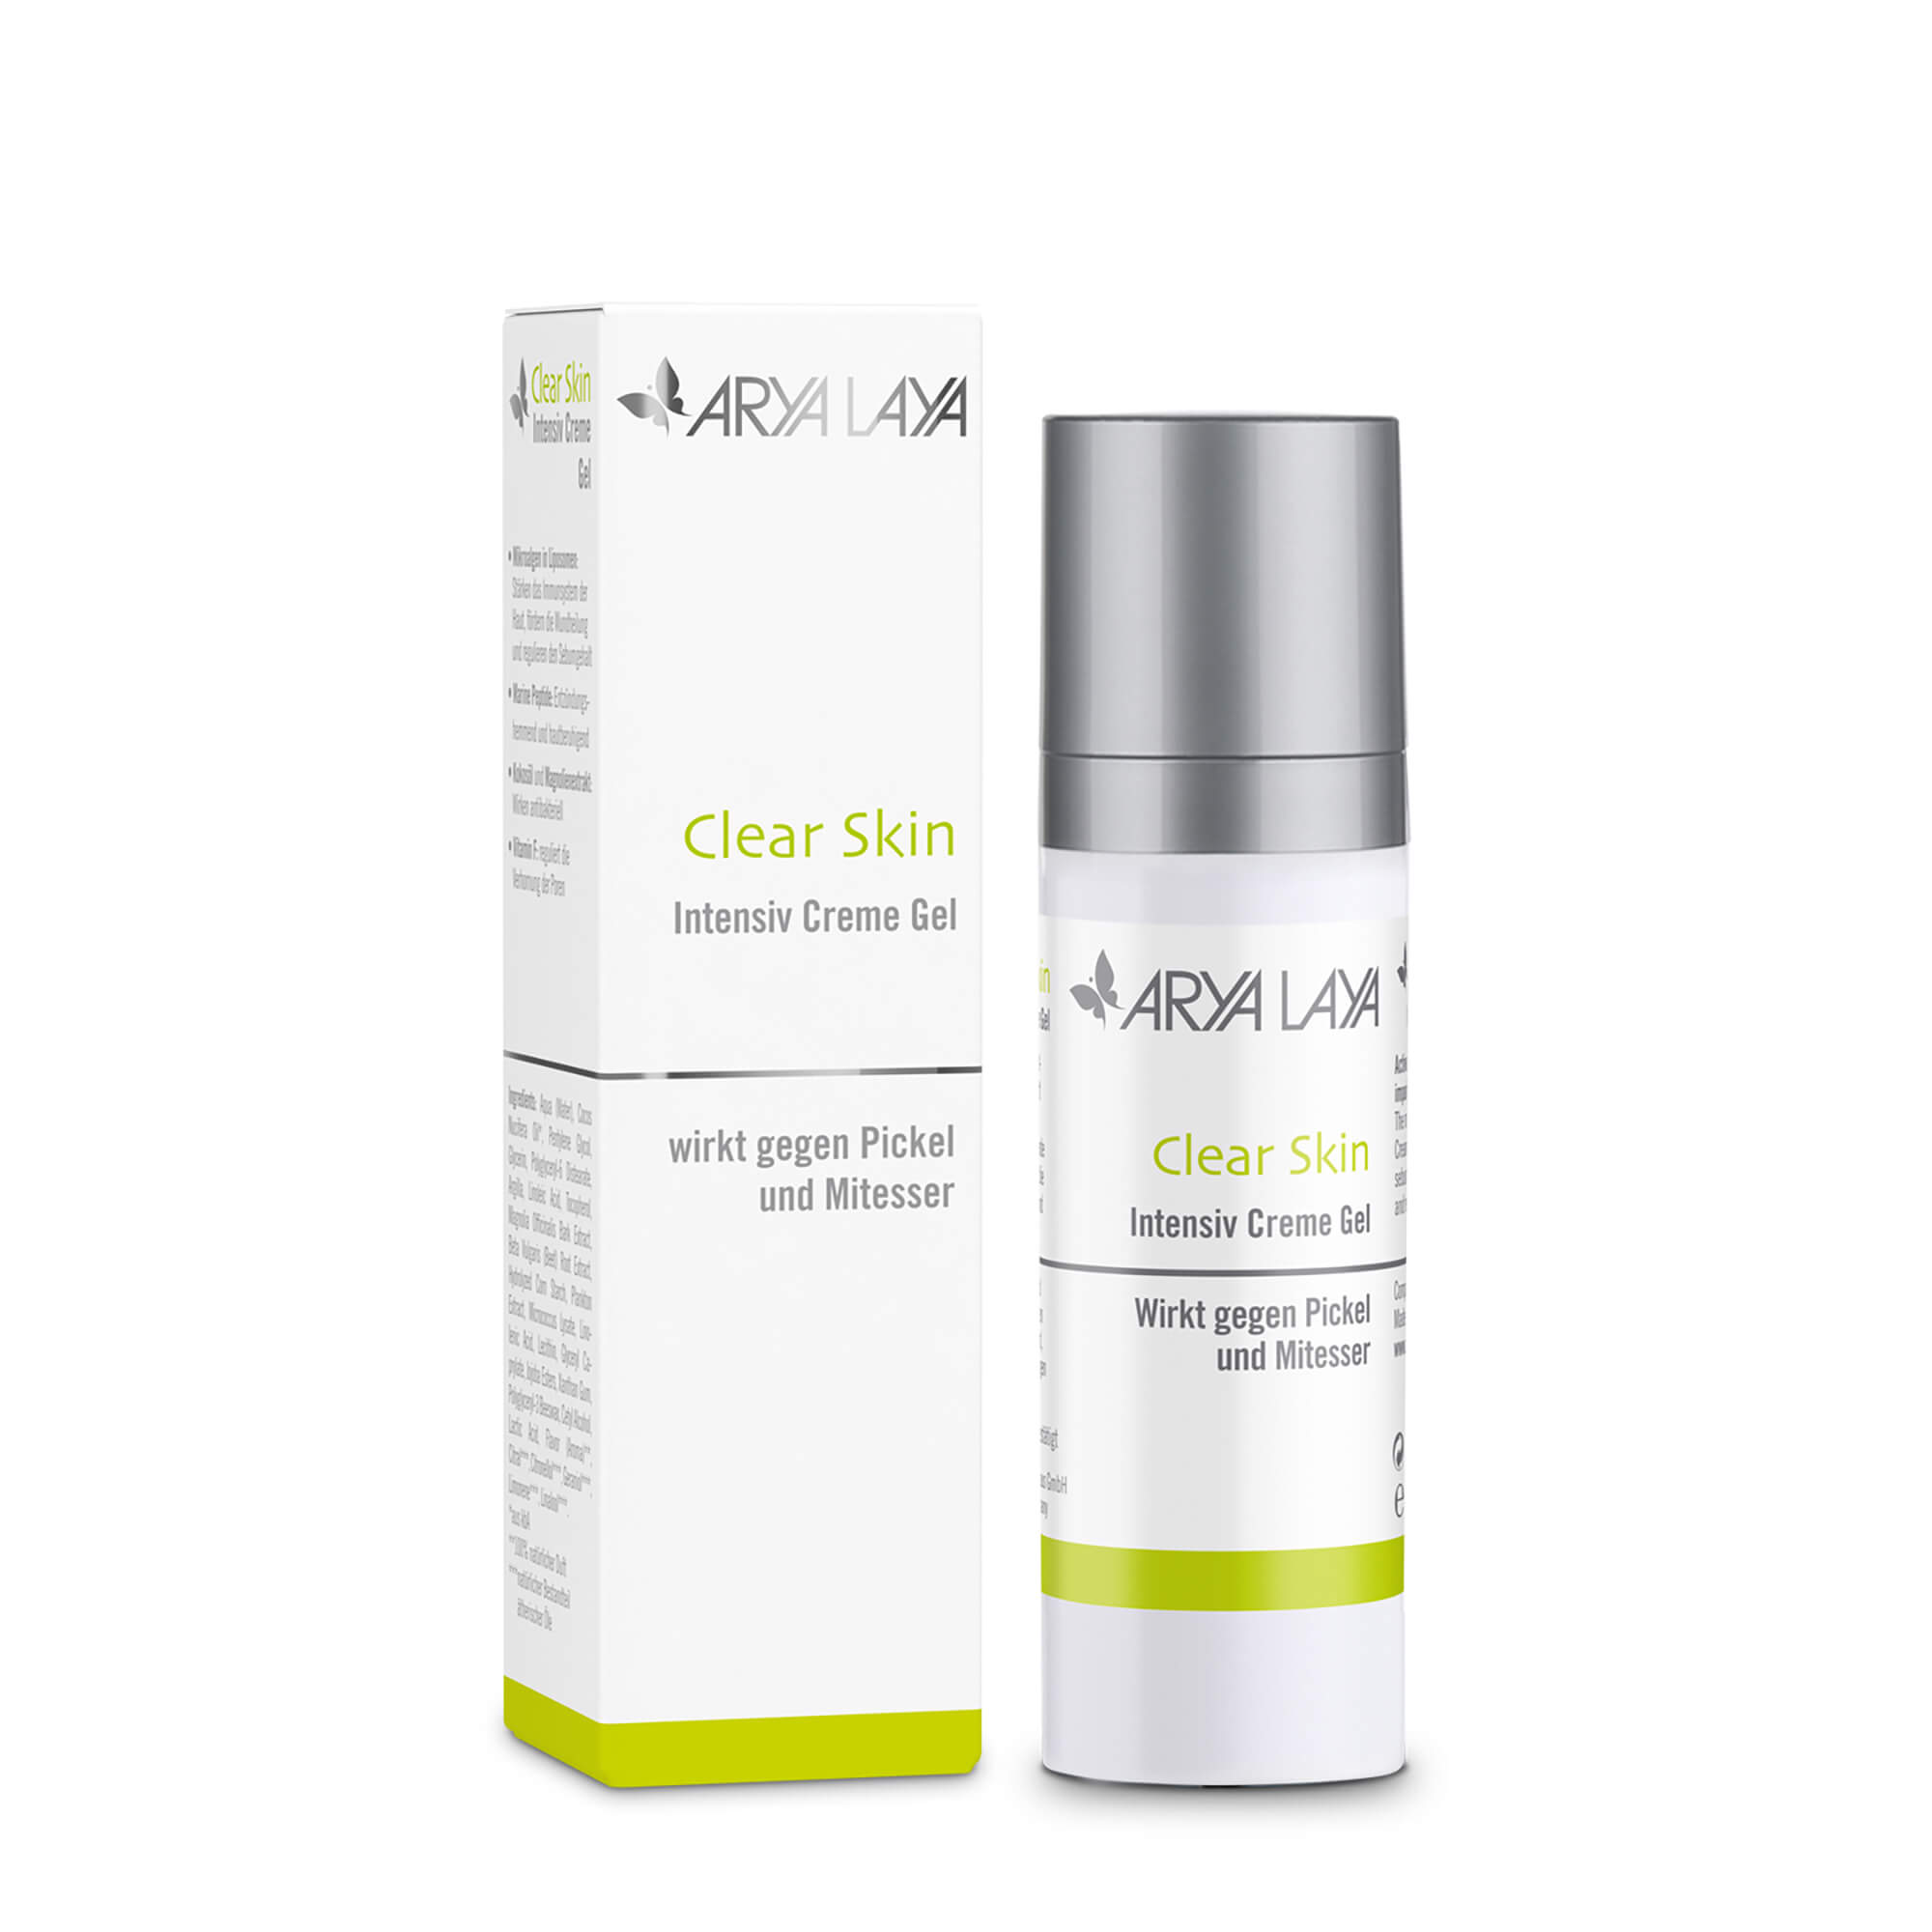 Airless-Spender und Faltschachtel mit ARYA LAYA Clear Skin Intensiv Creme Gel, 30 ml